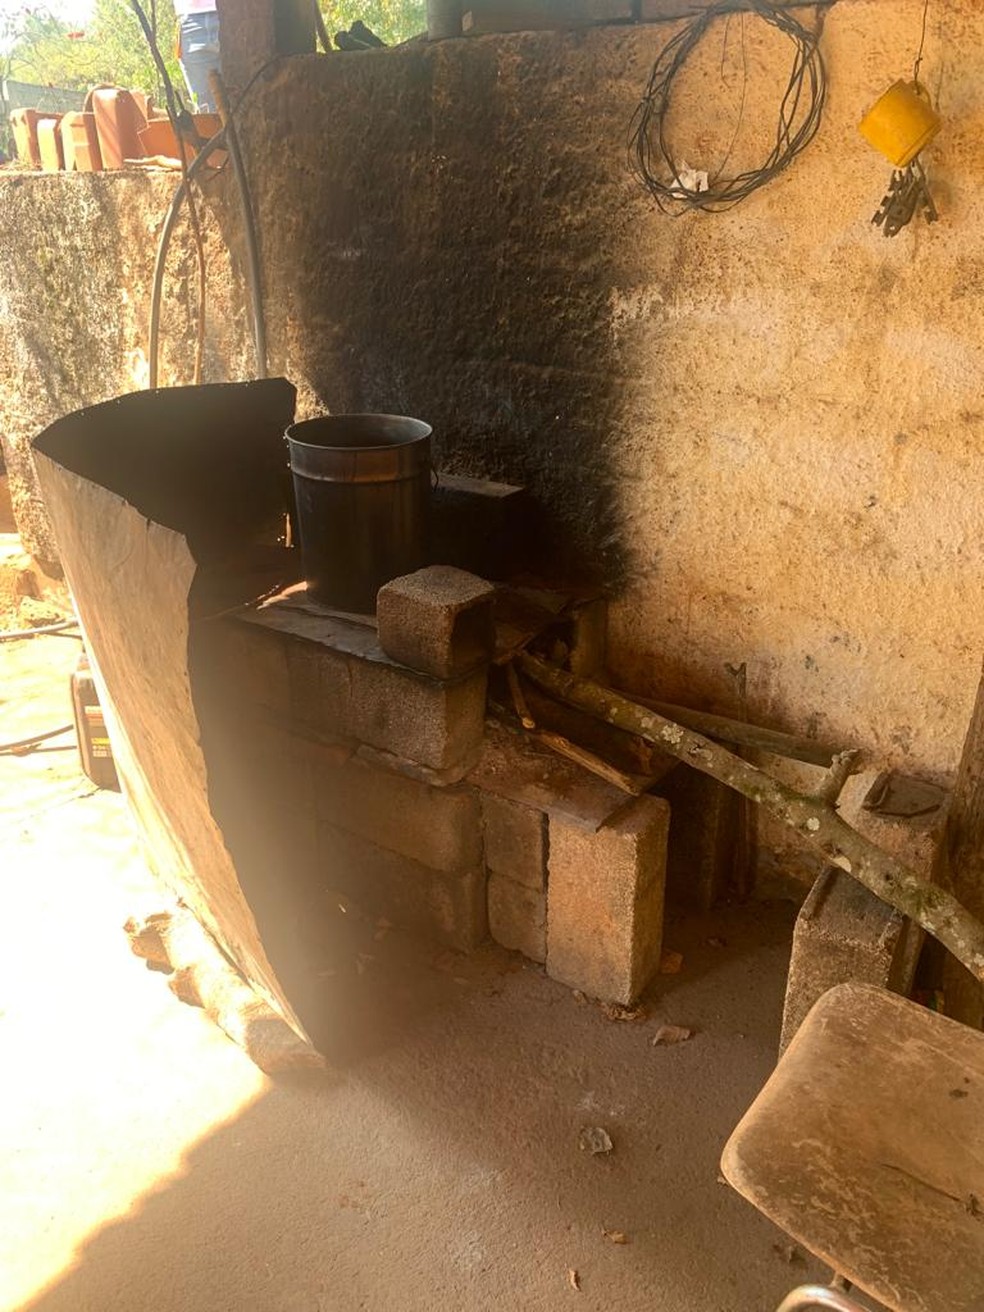 Fogão a lenha improvisado que idoso usava para cozinhar em Taubaté. — Foto: Divulgação/MPT